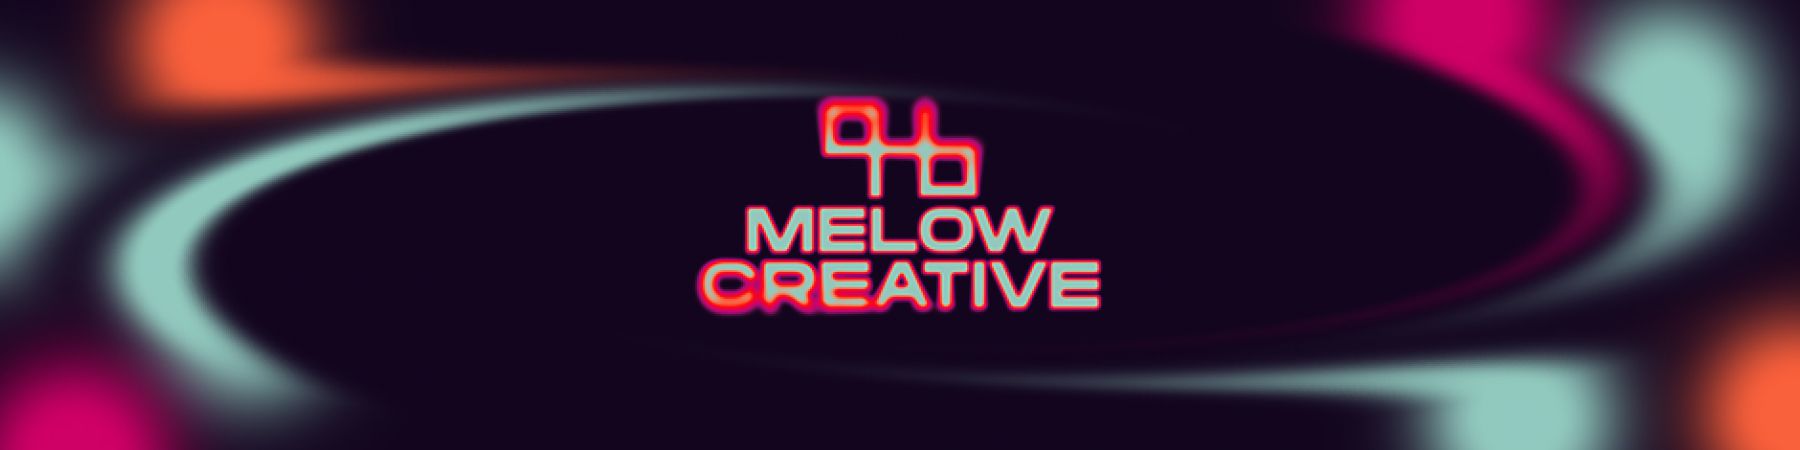 خرید محصولات از Melow Creative